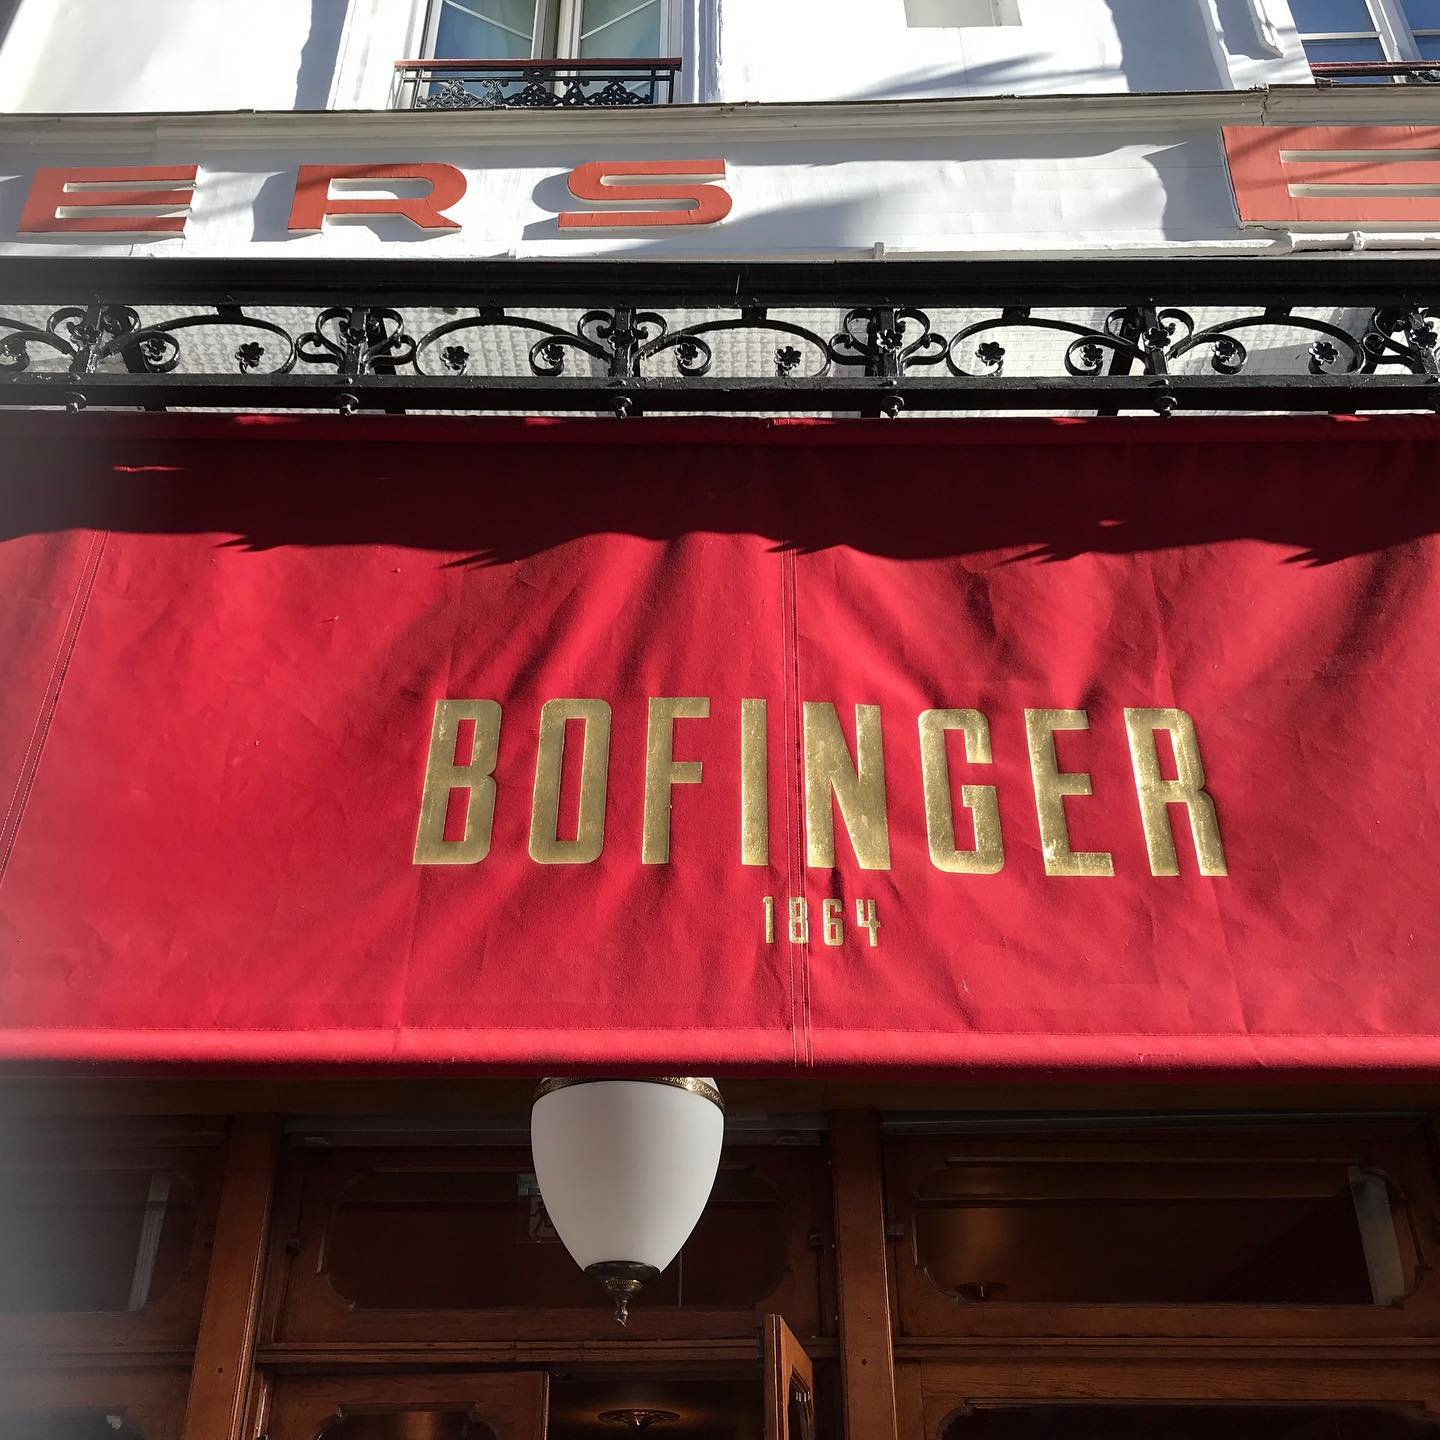 Bofinger-Brasserie-Art-Deco-Decor.jpg